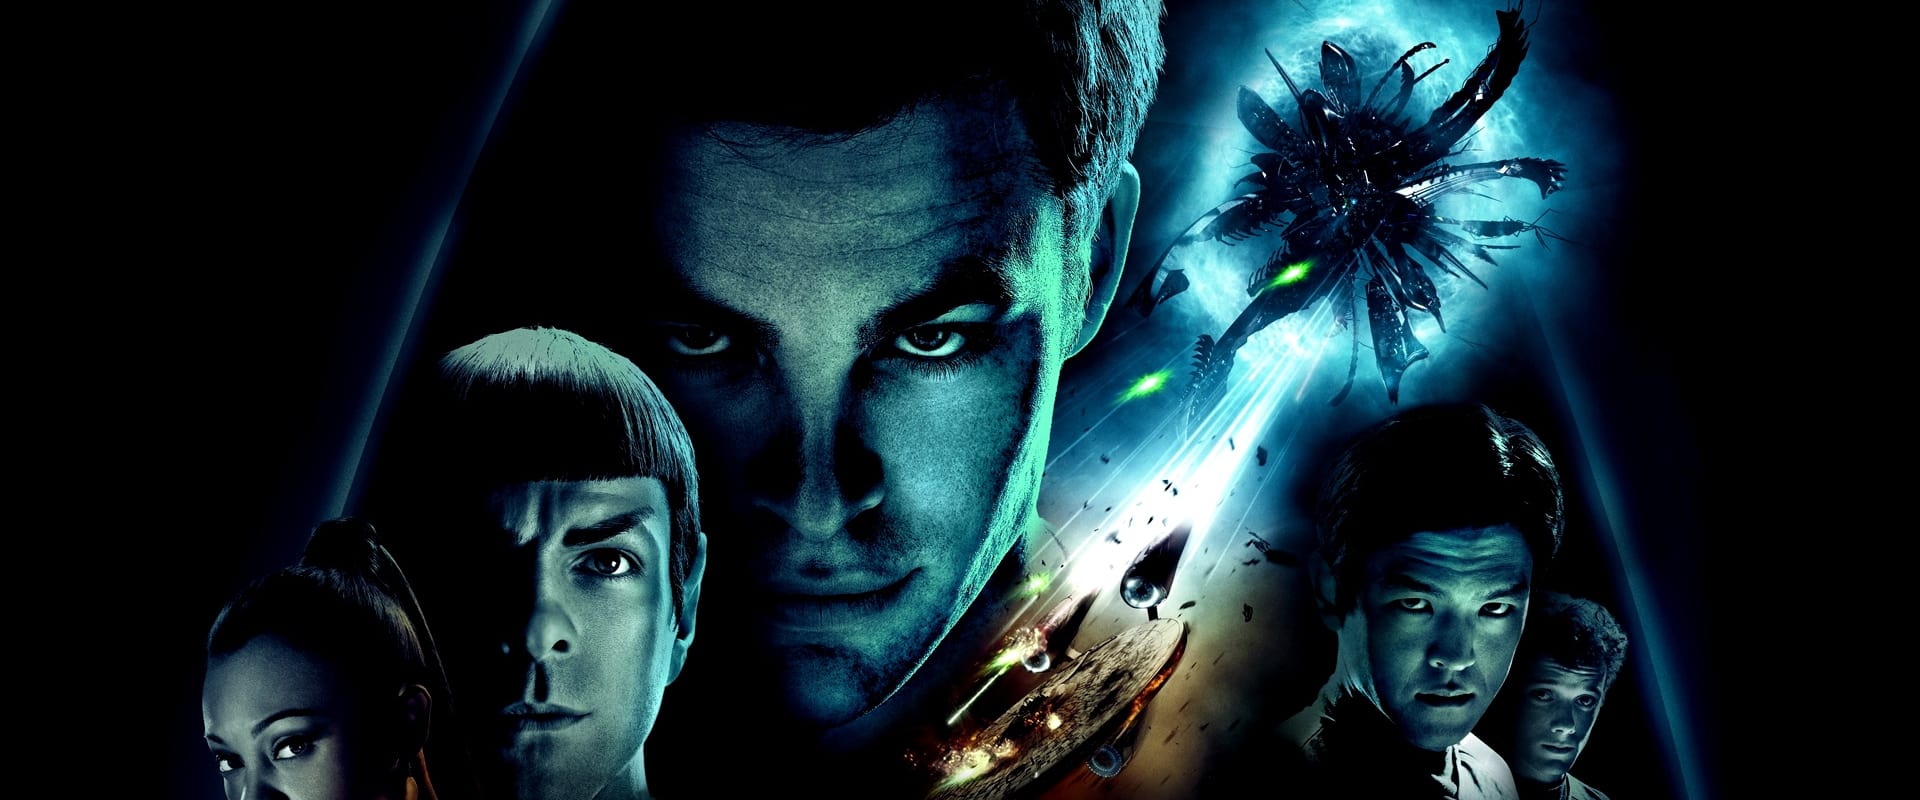 Star Trek - Il futuro ha inizio